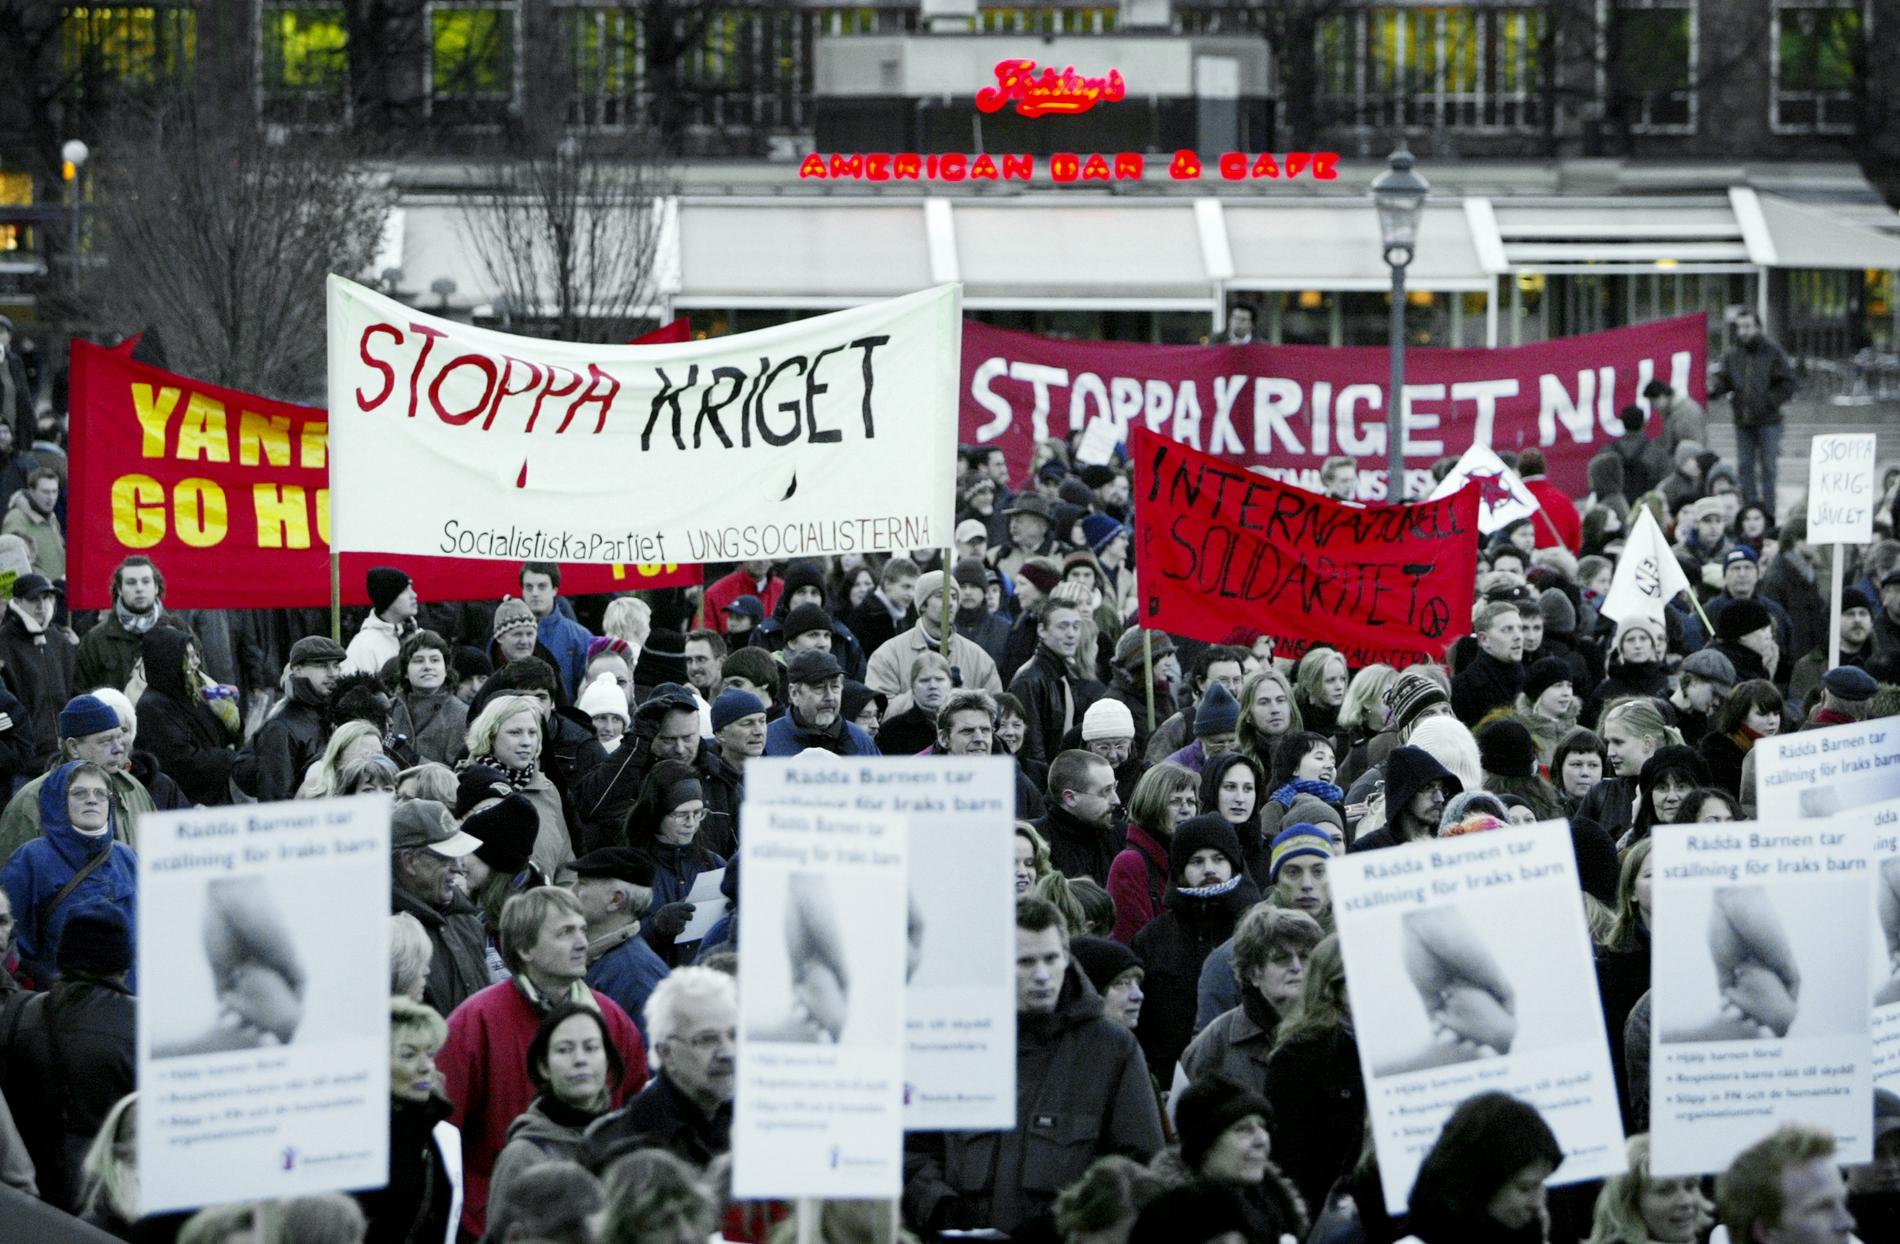 Torsdagen den 20 mars 2003 samlades människor i Kungsträdgården för att demonstrera mot Irakkriget. Demonstrationståget gick från Kungsträdgården till Amerikanska ambassaden.